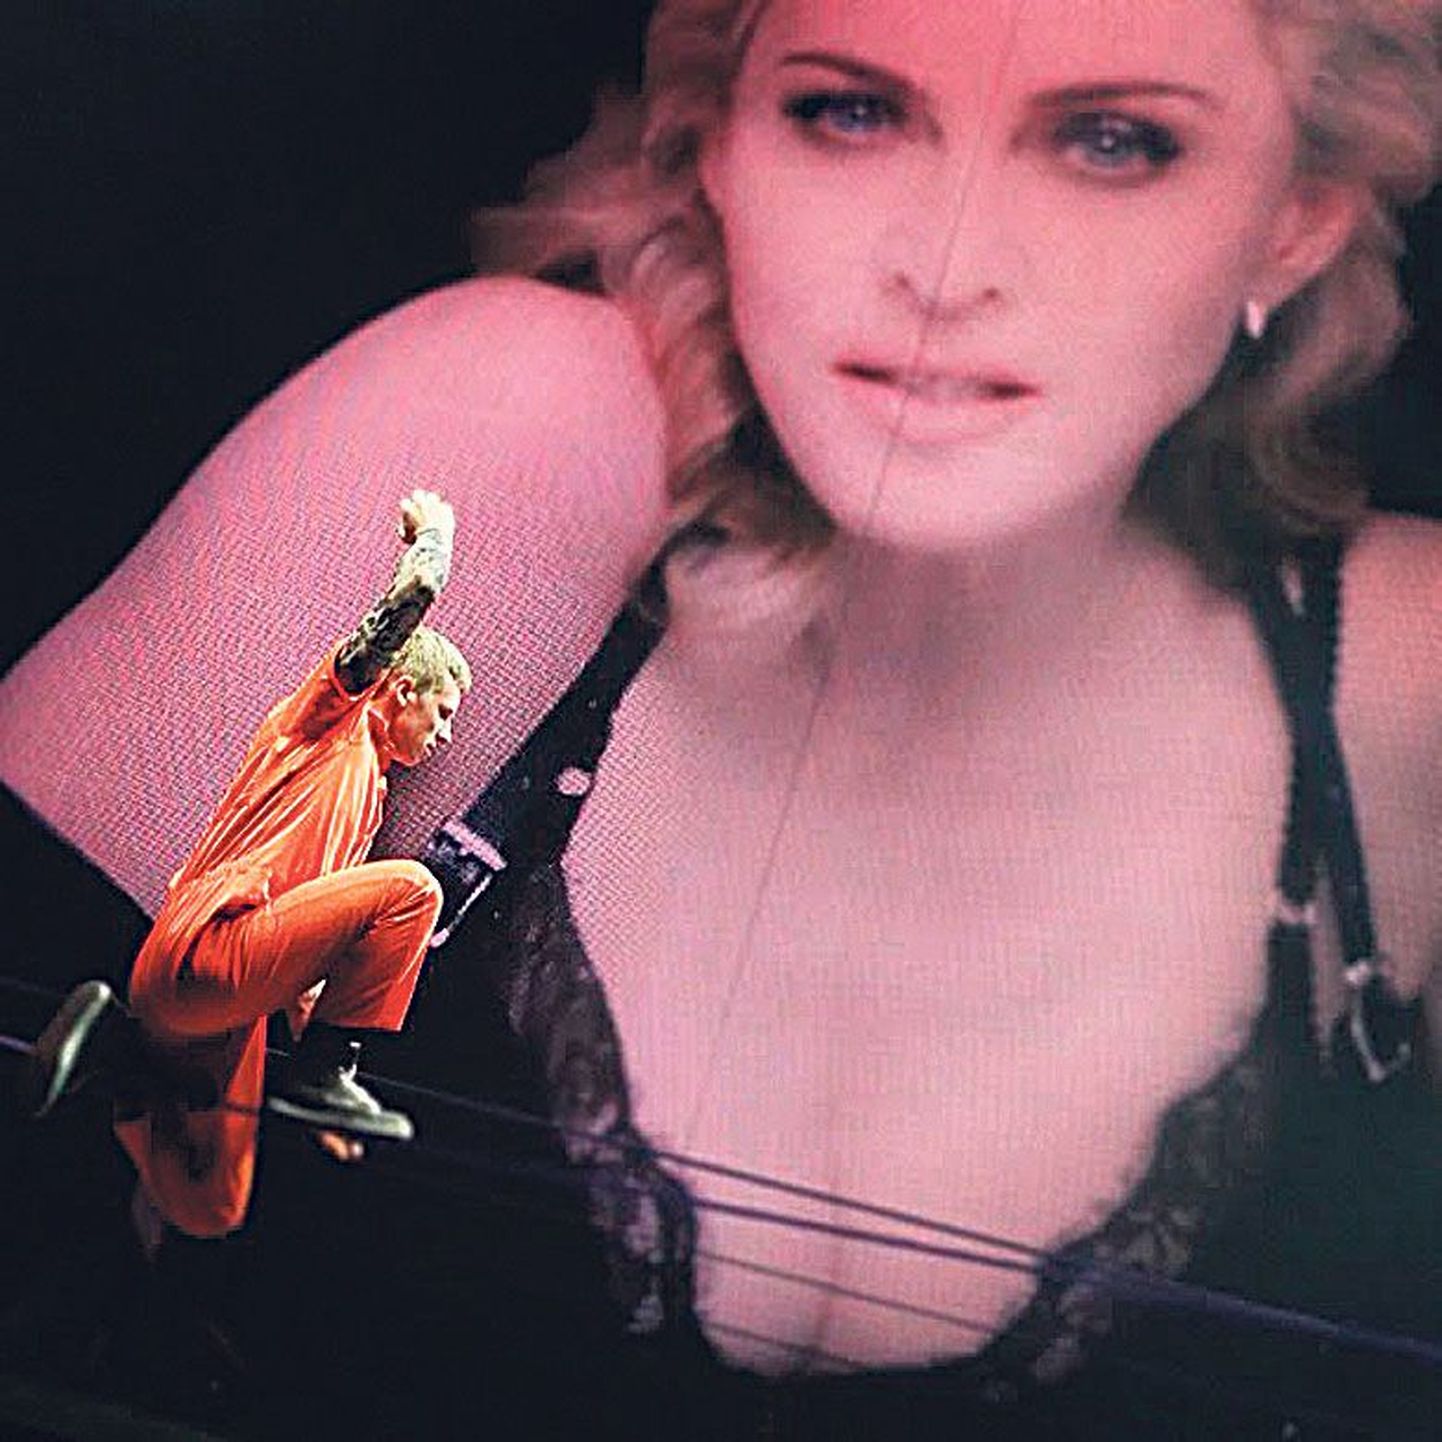 Võrratu oskus: suurelt ekraanilt vaatava Madonna pilgu all keskendub Eesti noormees Jaan Roose oma trikile.